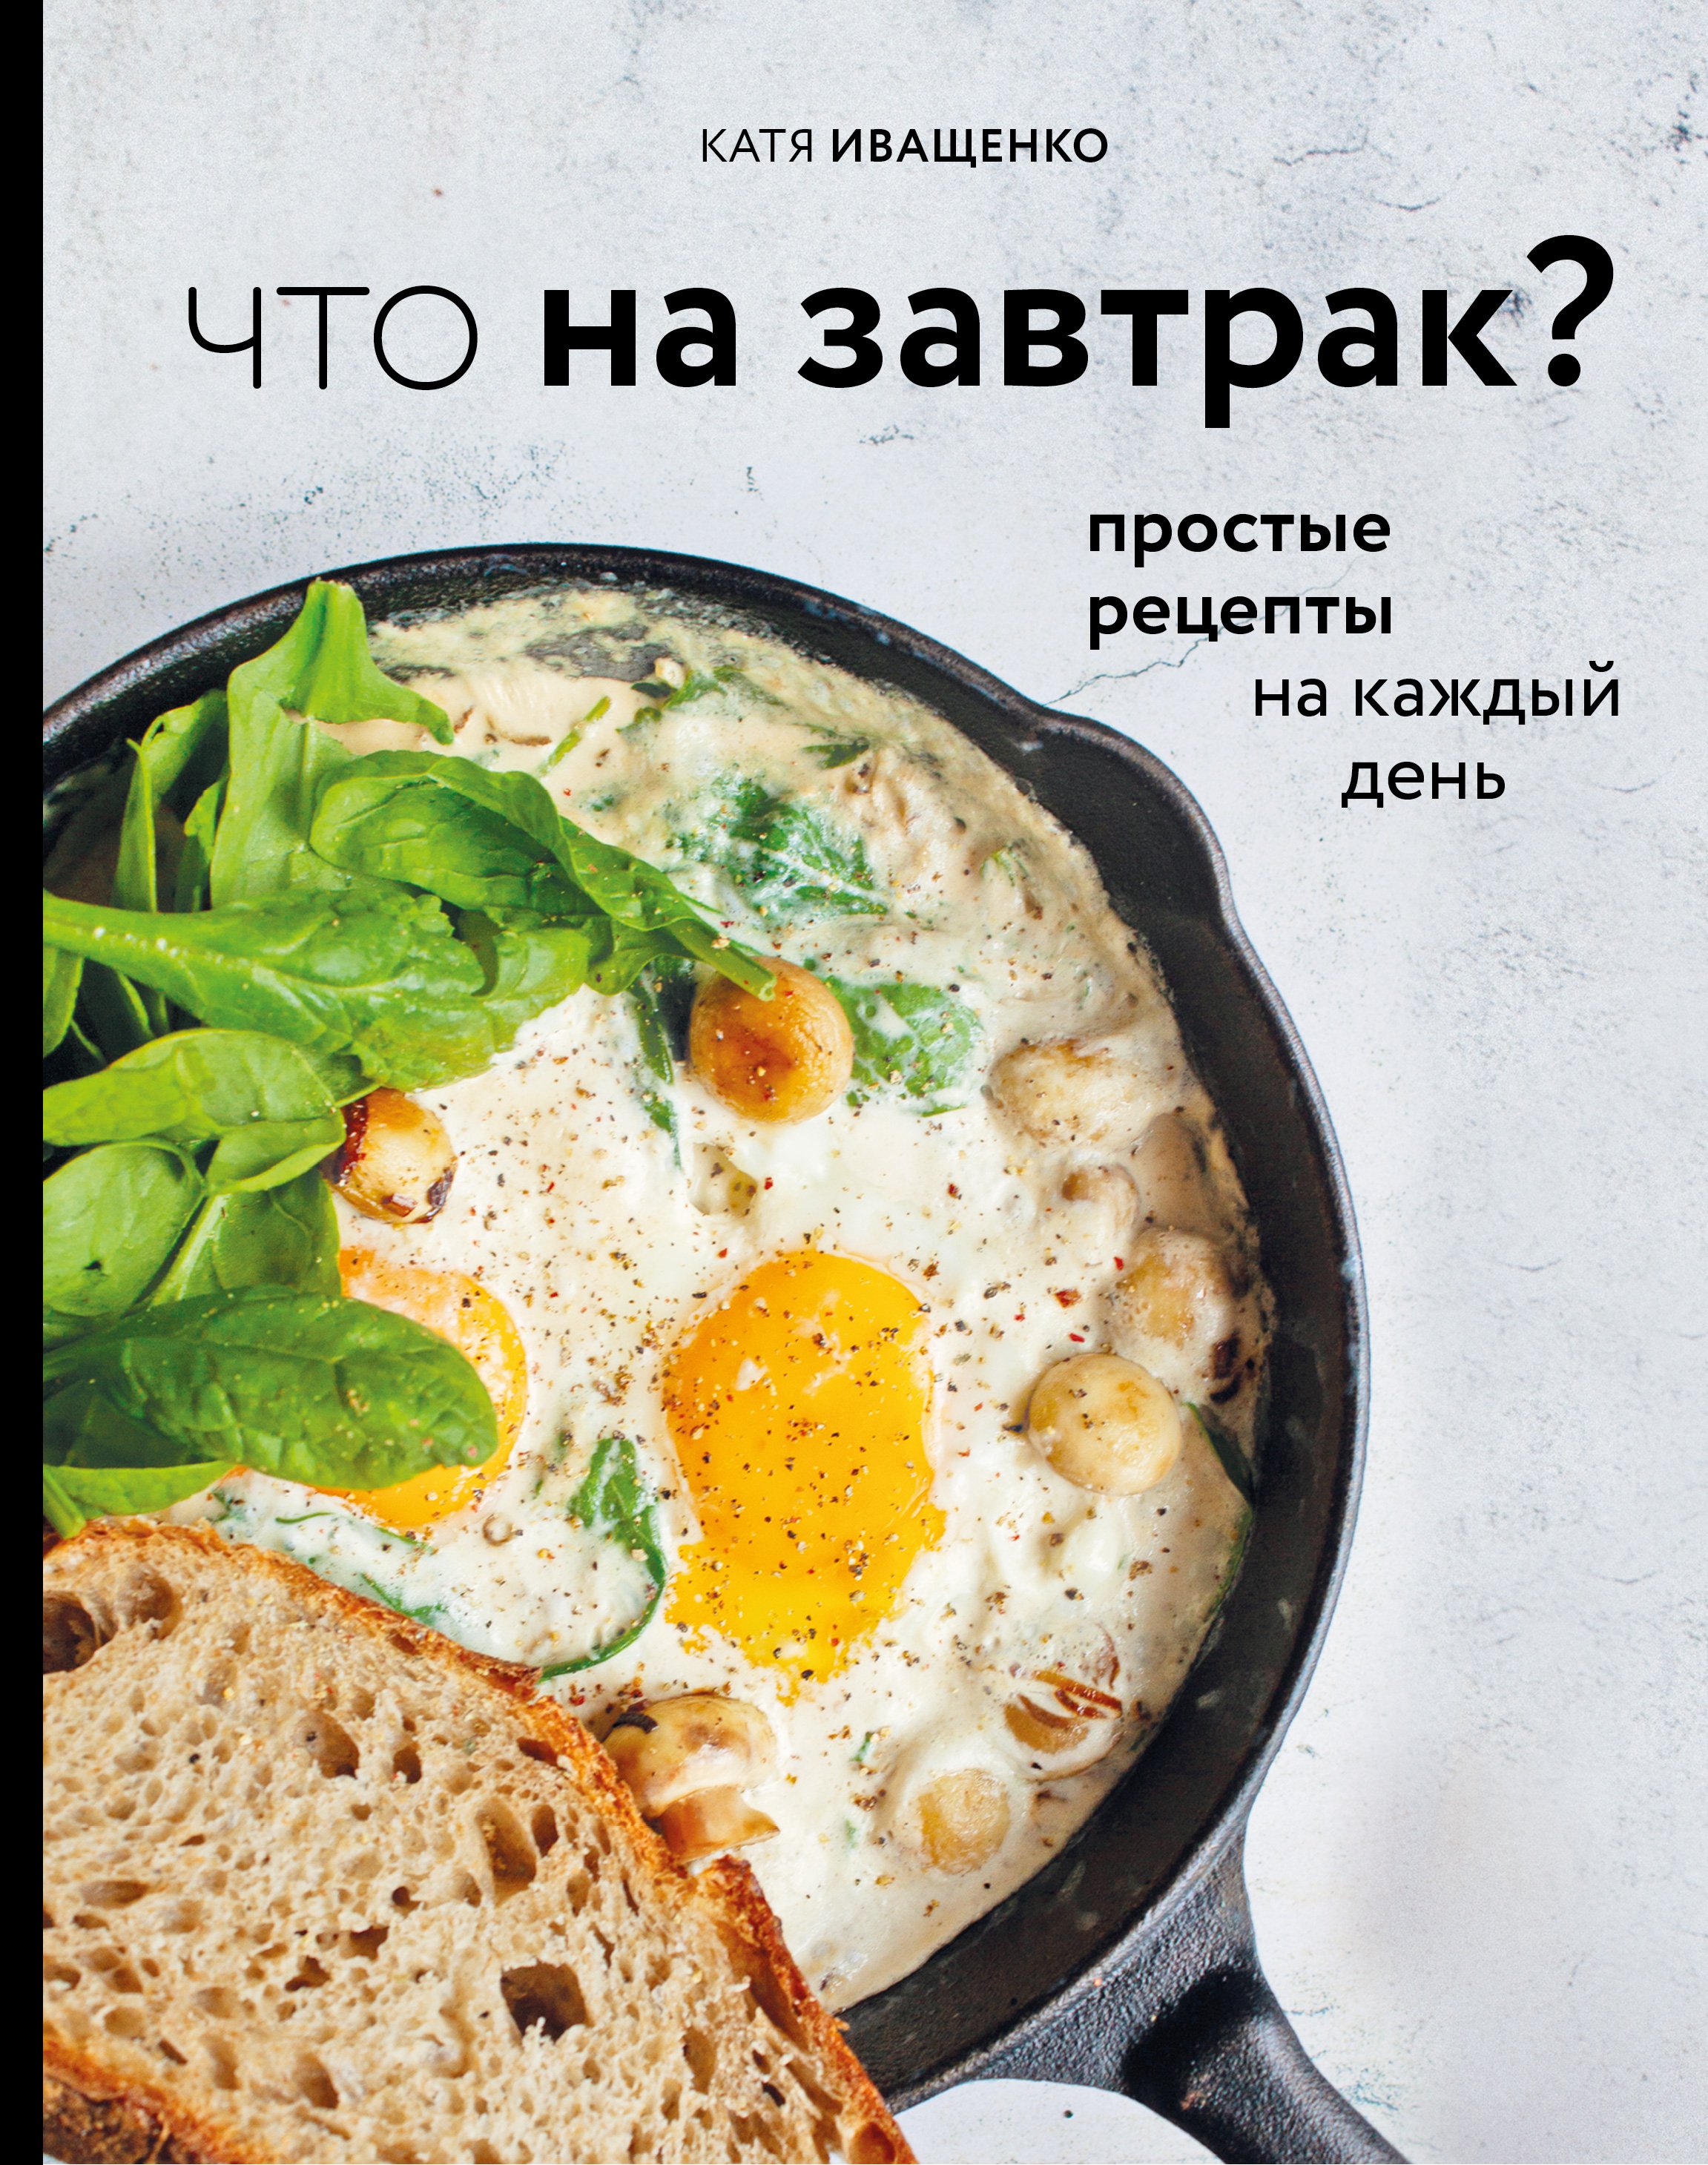 Иващенко Катя Что на завтрак? Простые рецепты на каждый день (с автографом)